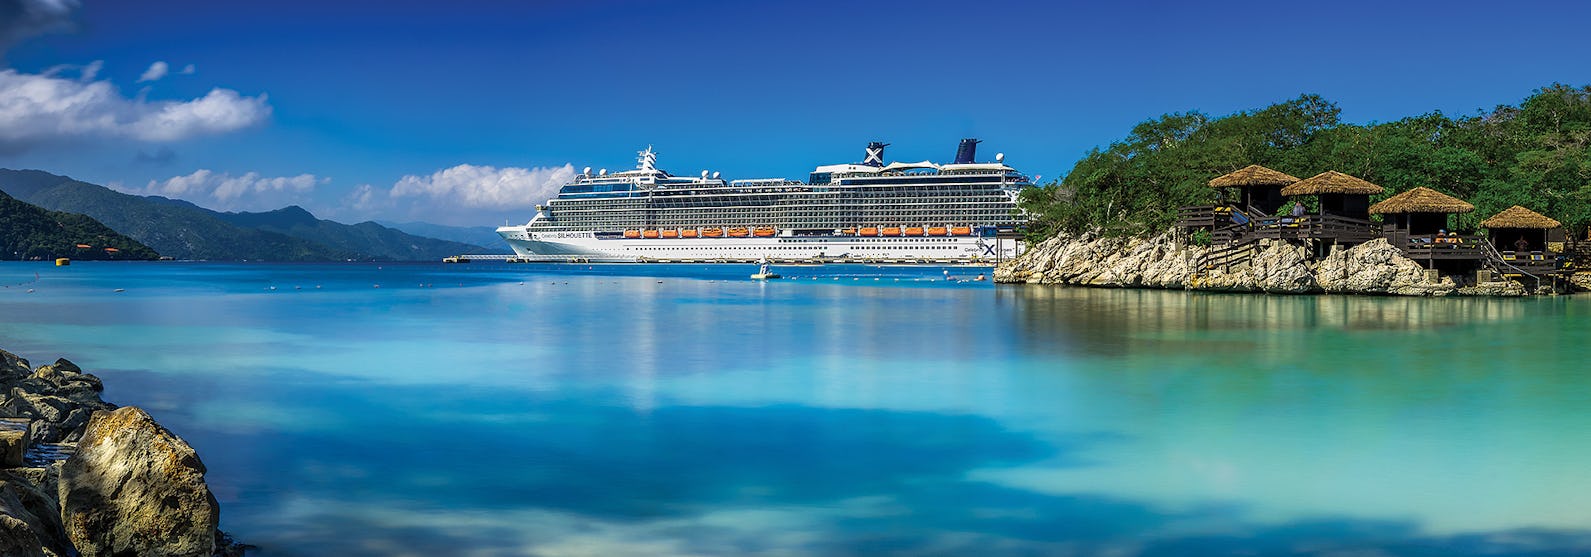 Celebrity Silhouette uppenbarar sig i bakgrunden med ljusblått vatten och en tropisk ö i förgrunden.